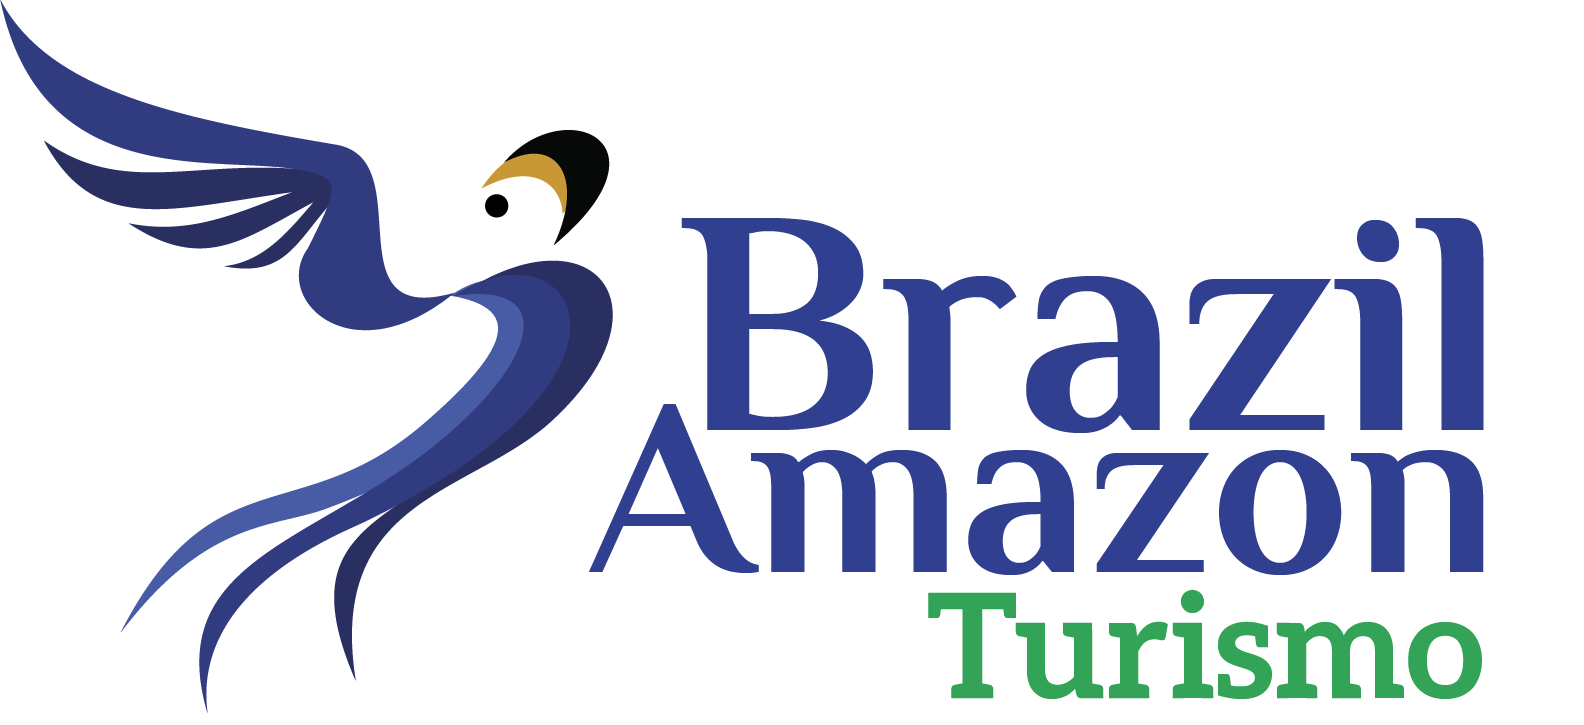 Brazil Amazon Turismo - Pra você a melhor viagem!